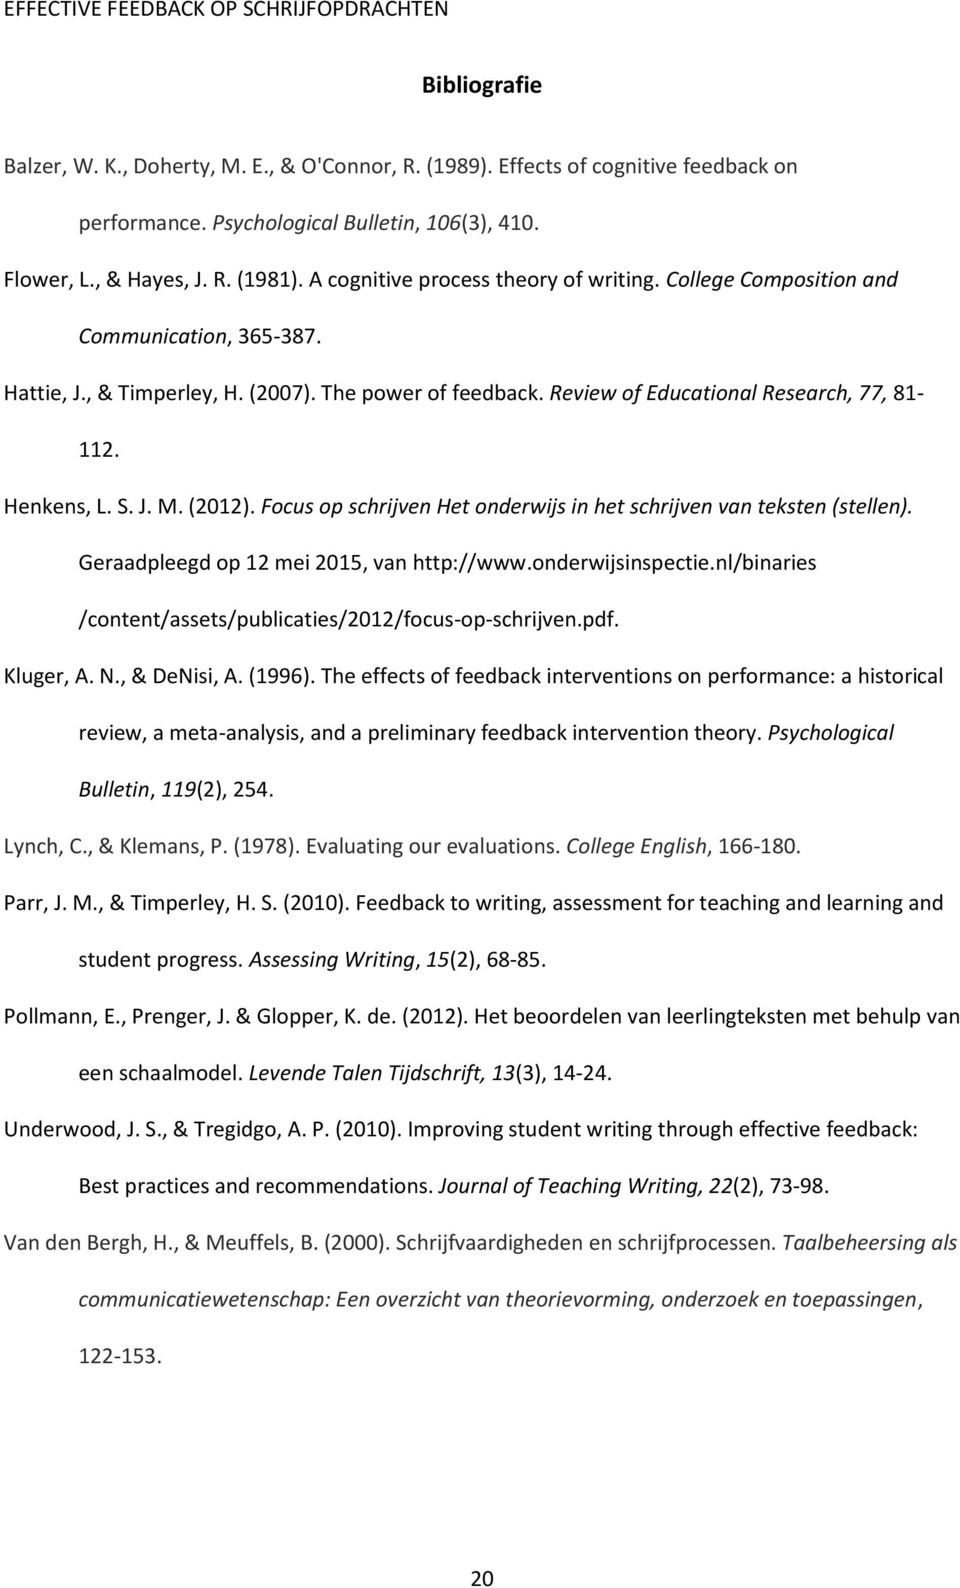 Henkens, L. S. J. M. (2012). Focus op schrijven Het onderwijs in het schrijven van teksten (stellen). Geraadpleegd op 12 mei 2015, van http://www.onderwijsinspectie.